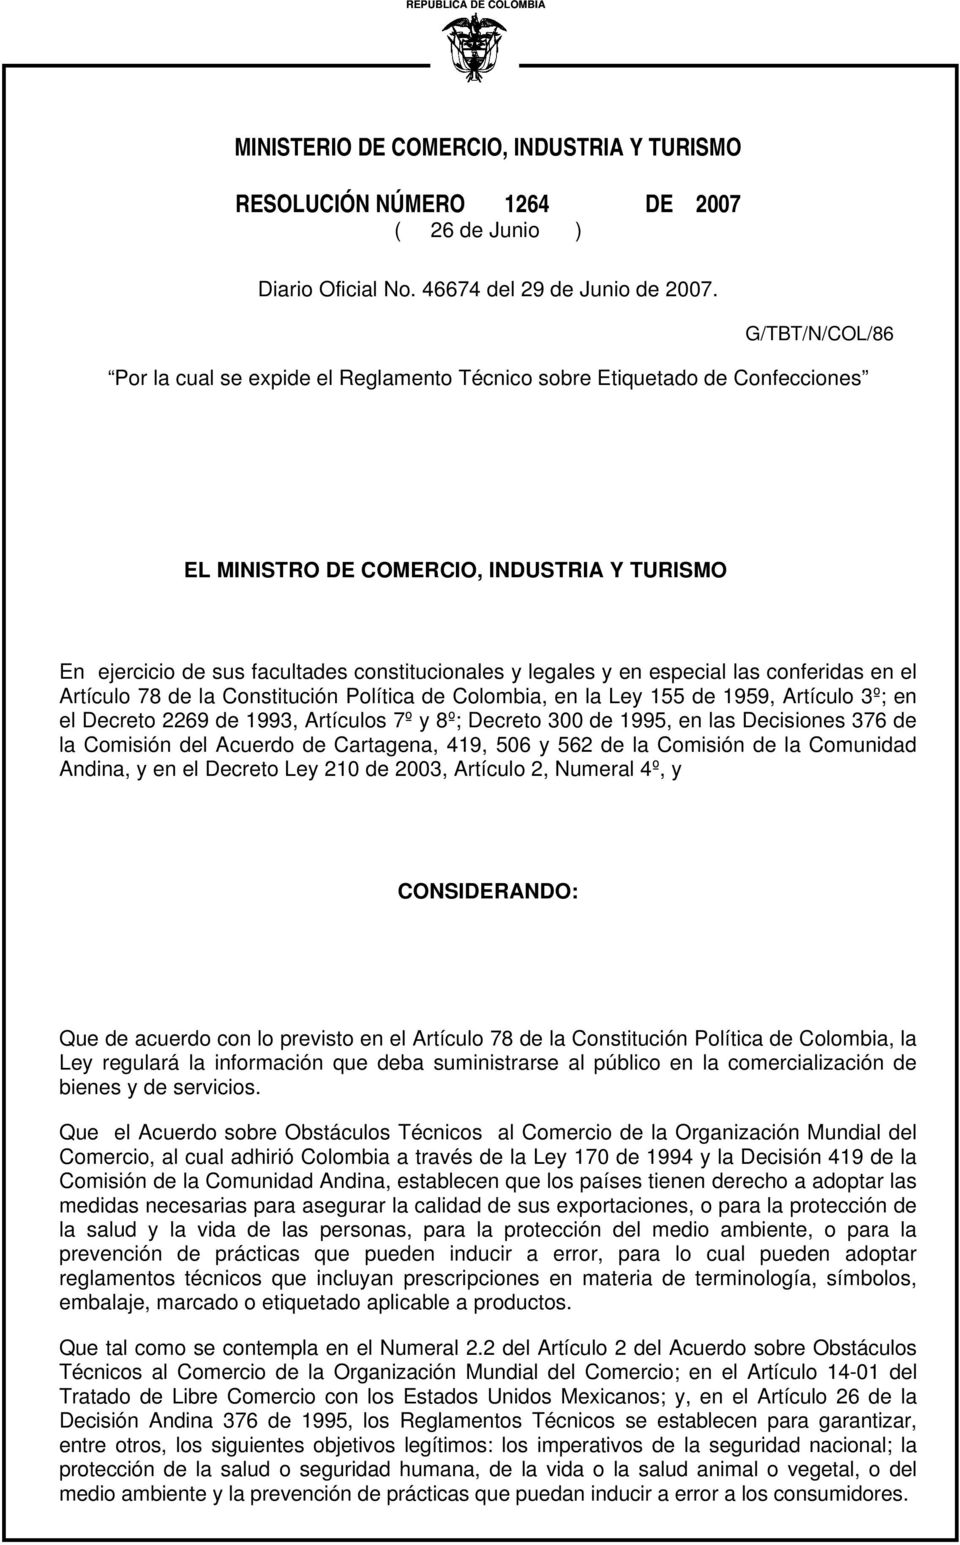 especial las conferidas en el Artículo 78 de la Constitución Política de Colombia, en la Ley 155 de 1959, Artículo 3º; en el Decreto 2269 de 1993, Artículos 7º y 8º; Decreto 300 de 1995, en las